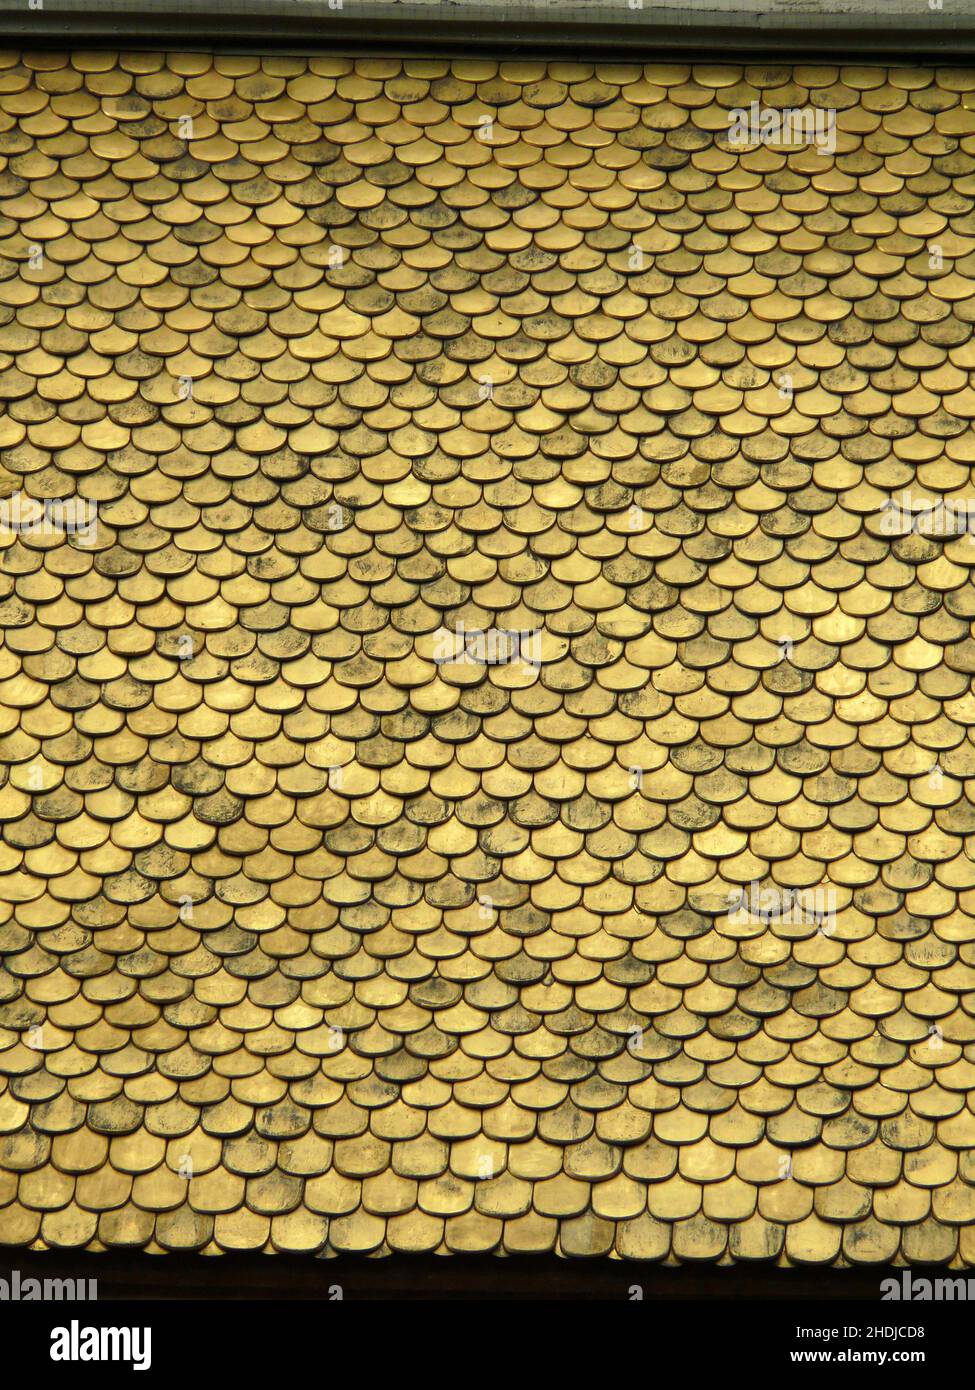 toit doré, bardeaux de cuivre, toits dorés, bardeaux de cuivre Banque D'Images